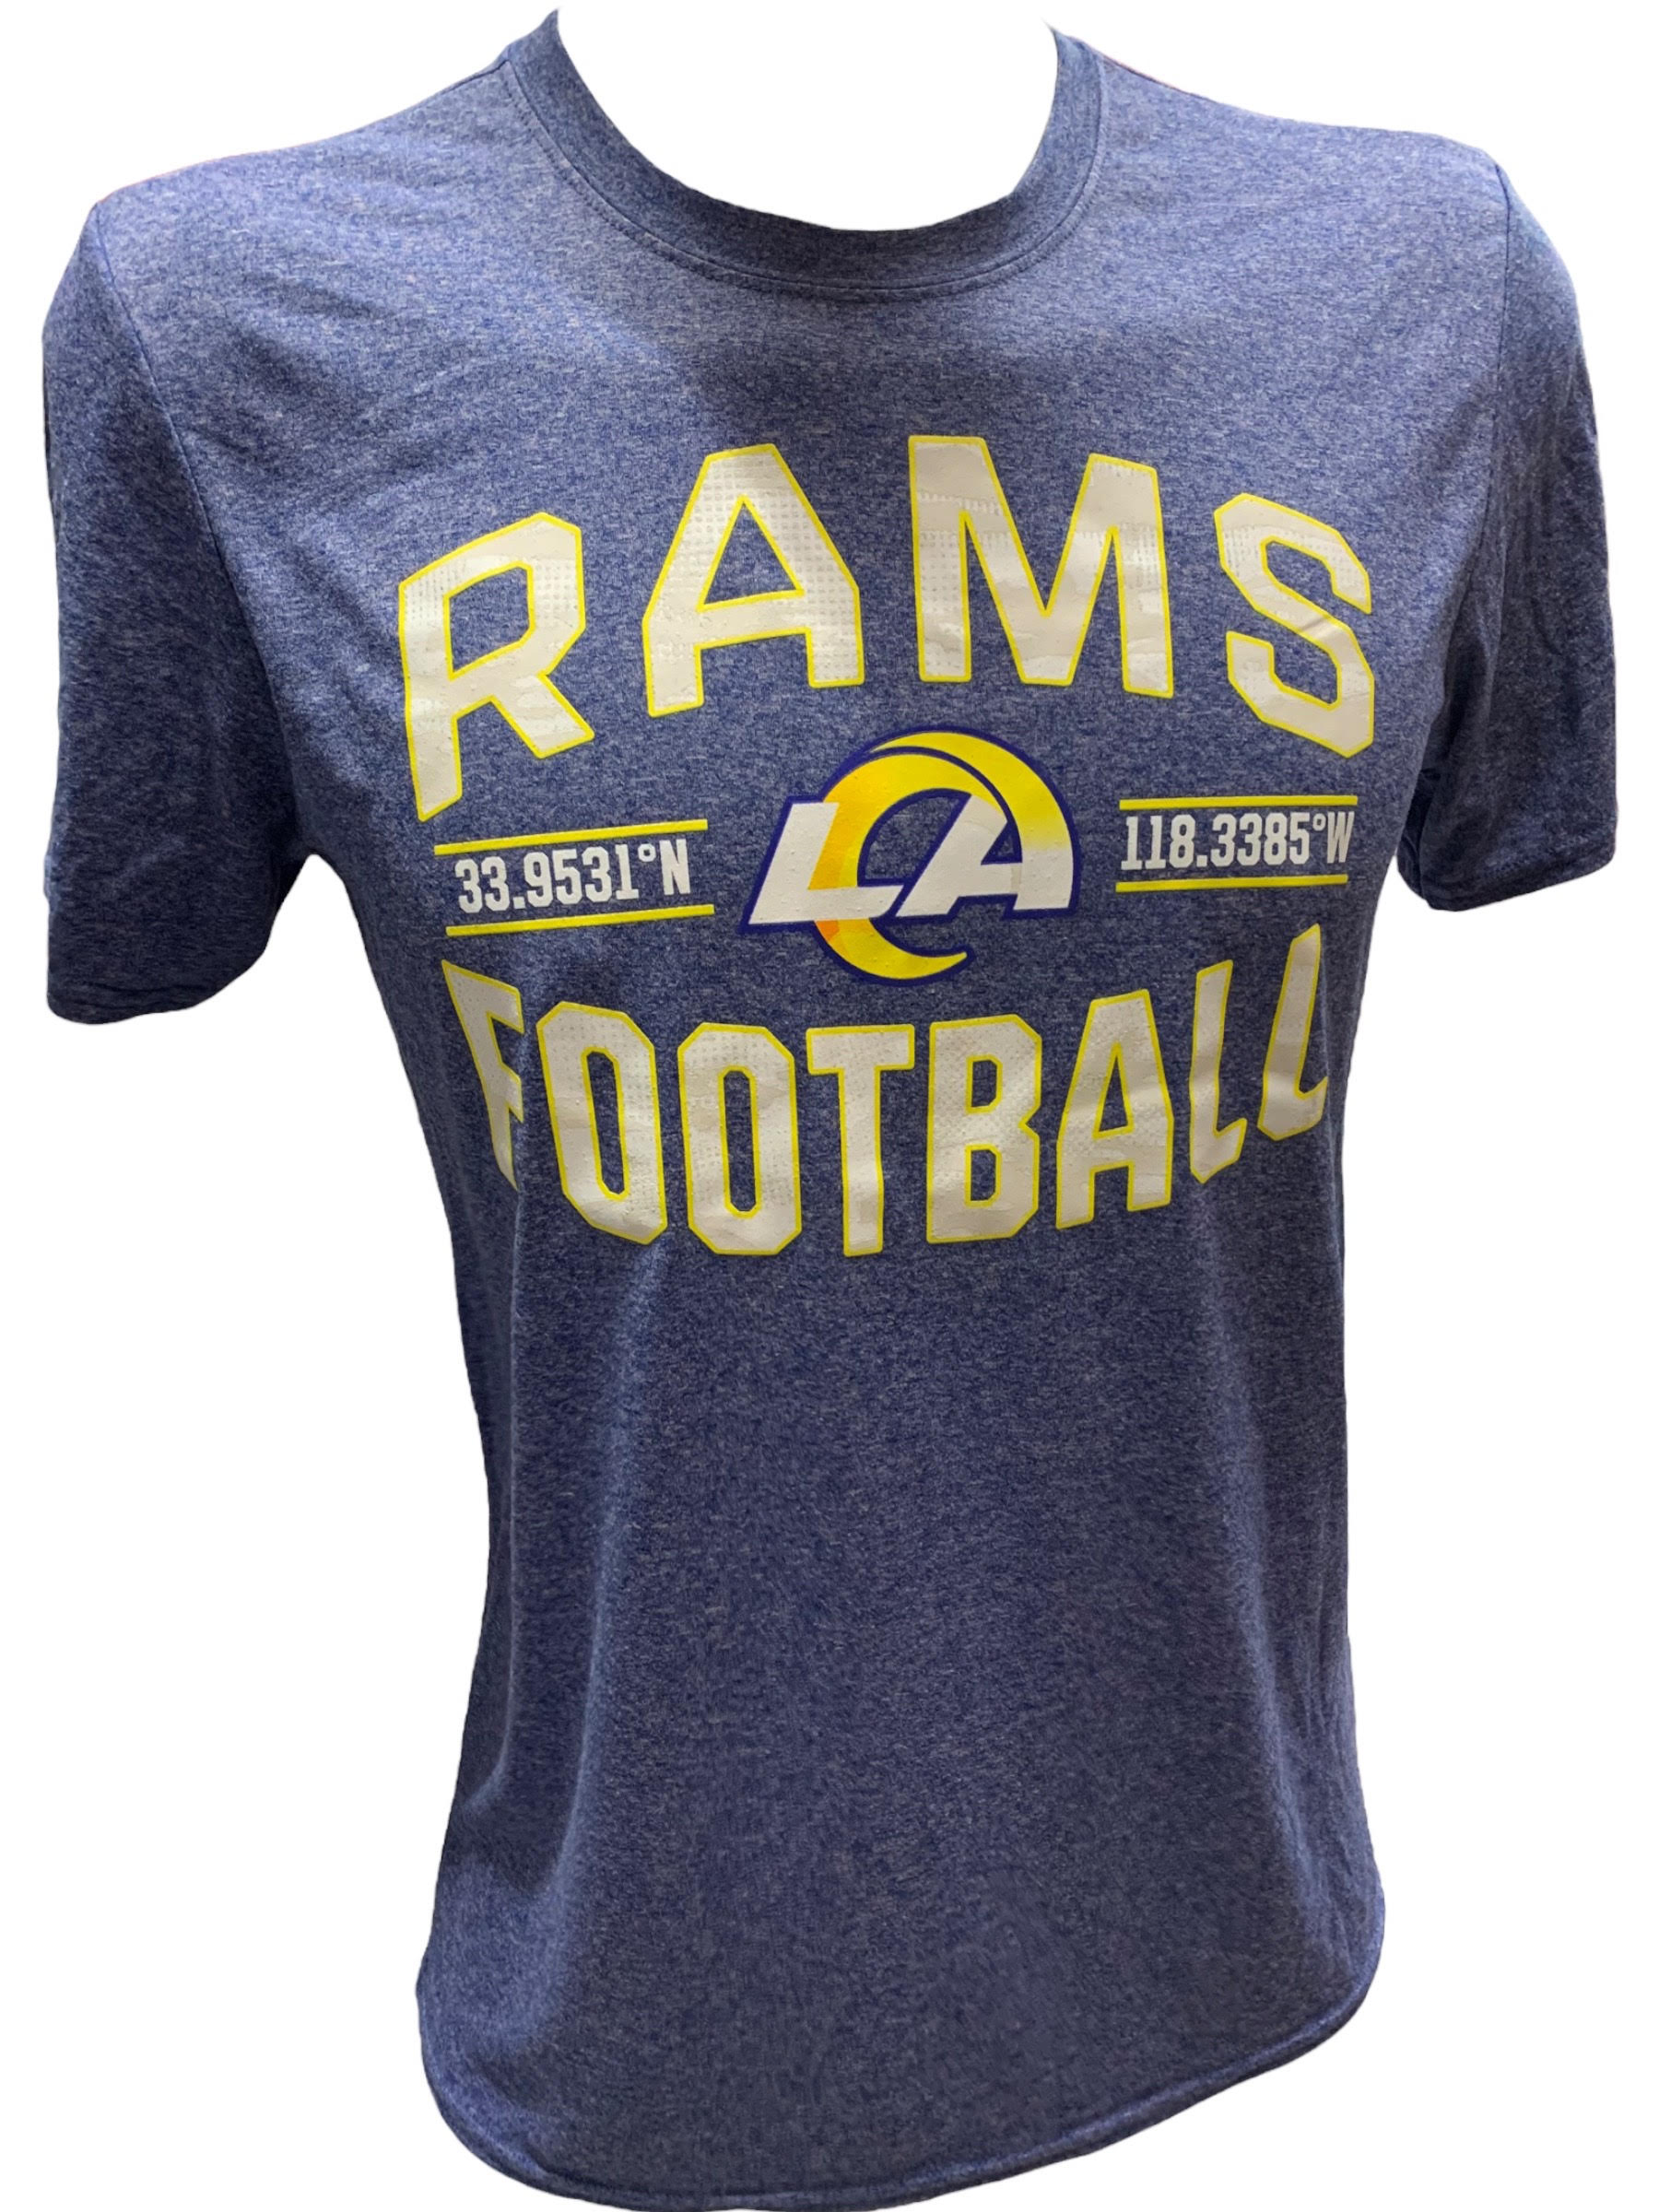 Los Angeles Rams Apparel, Rams Gear, Los Angeles Rams Shop, Store